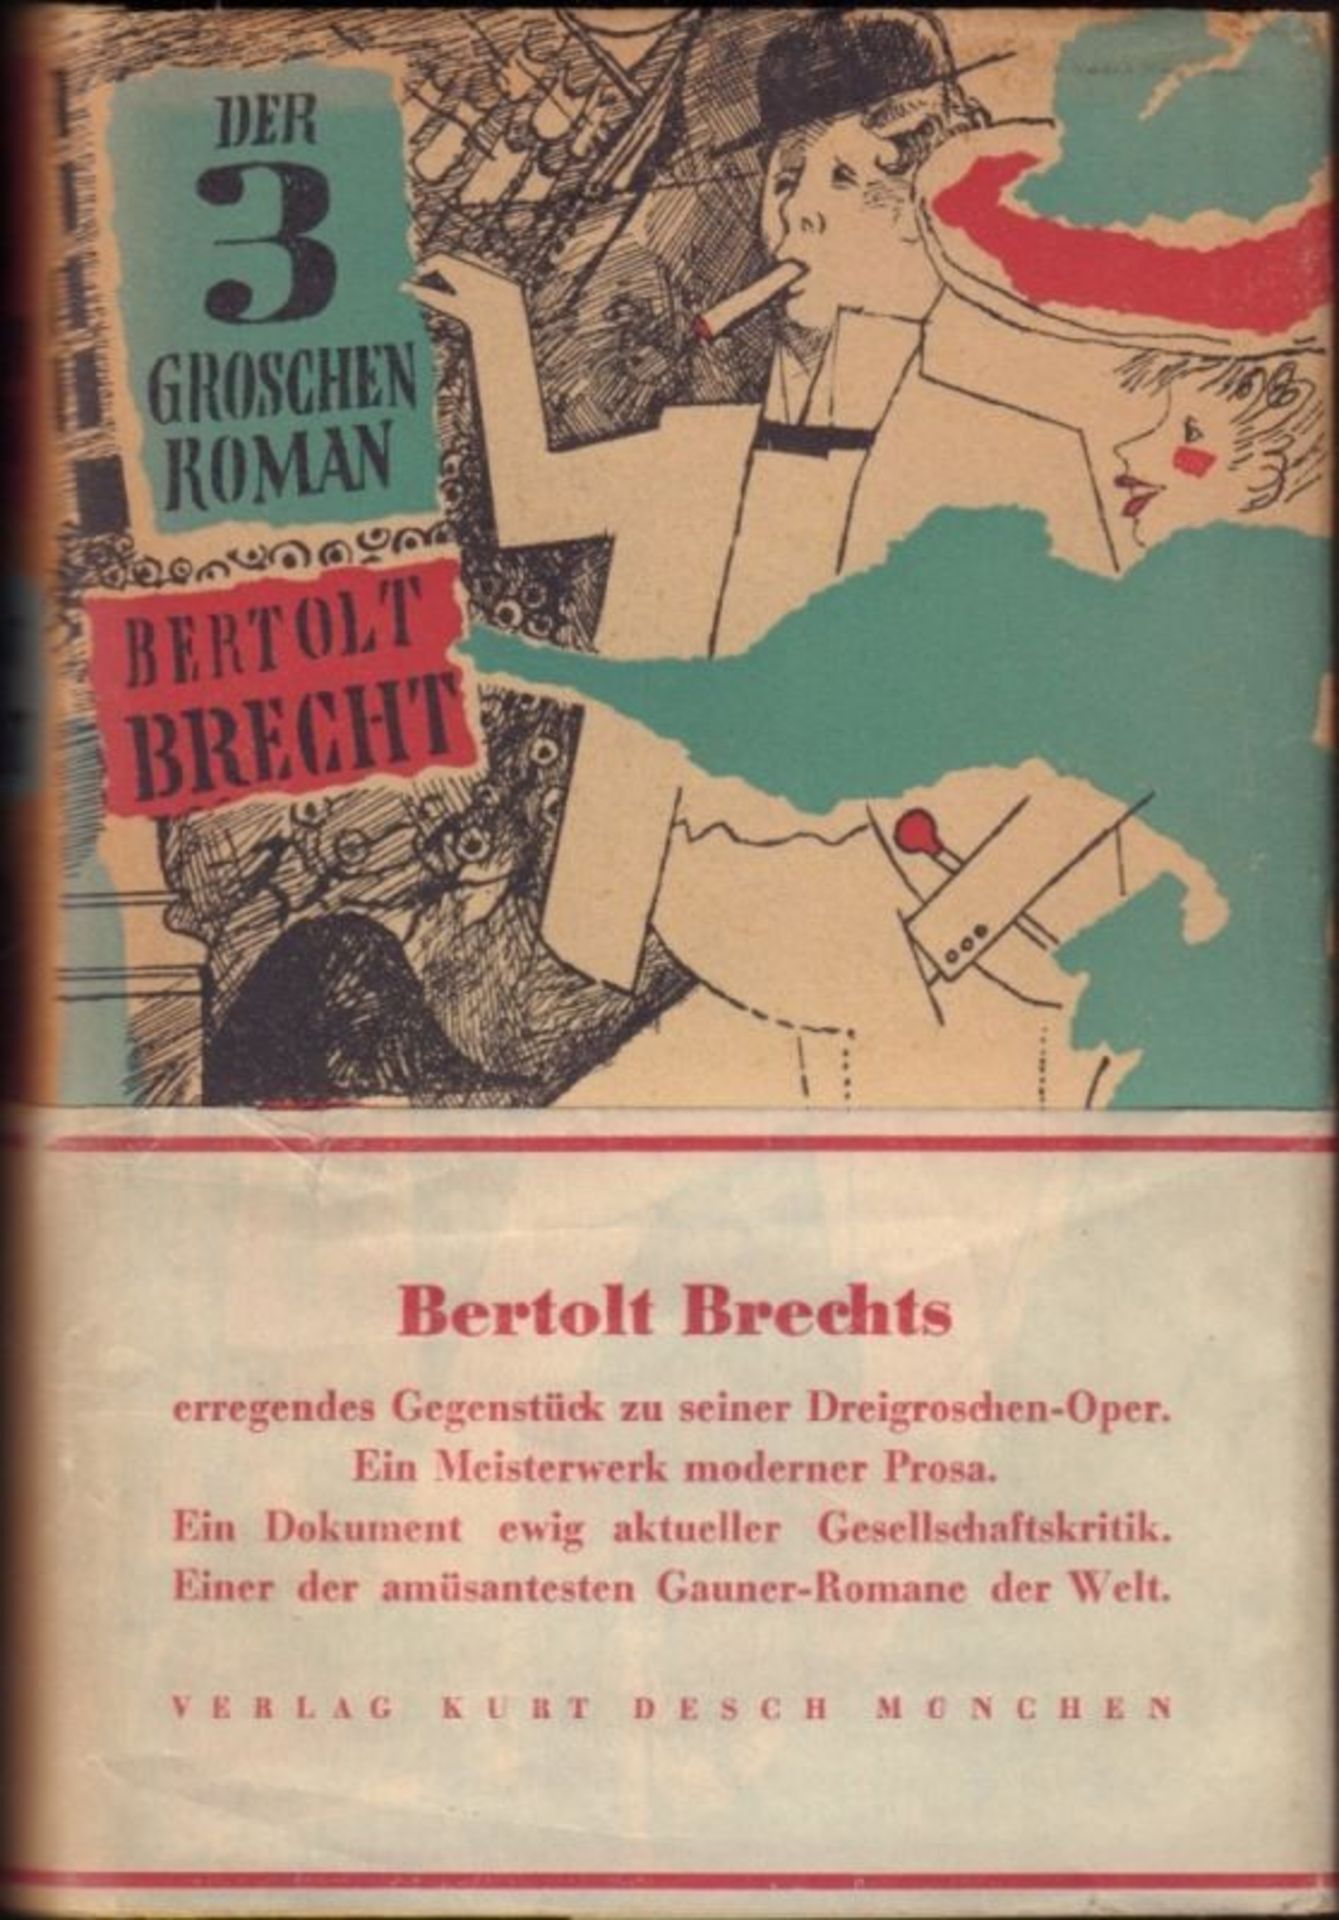 Bertolt Brecht. Der Dreigroschenroman. München, Kurt Desch [1949]. 8°. 475 S., 2 Bl. Gelber